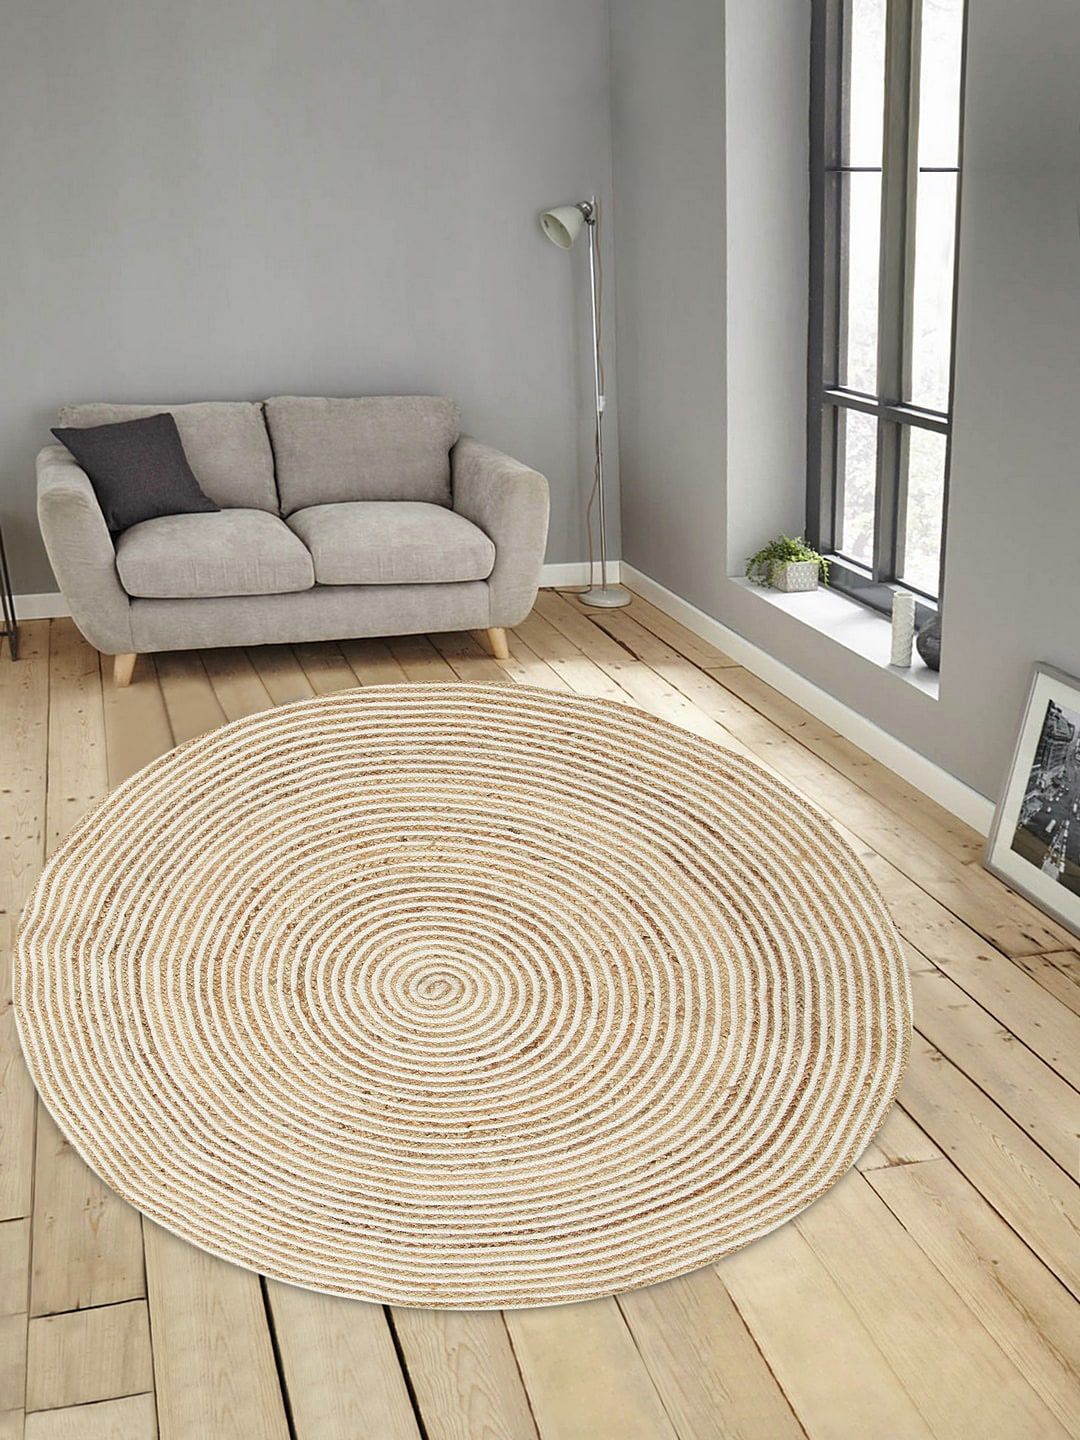 BLANC9 Beige & White Woven-Design Round Cotton Floor Mat Price in India